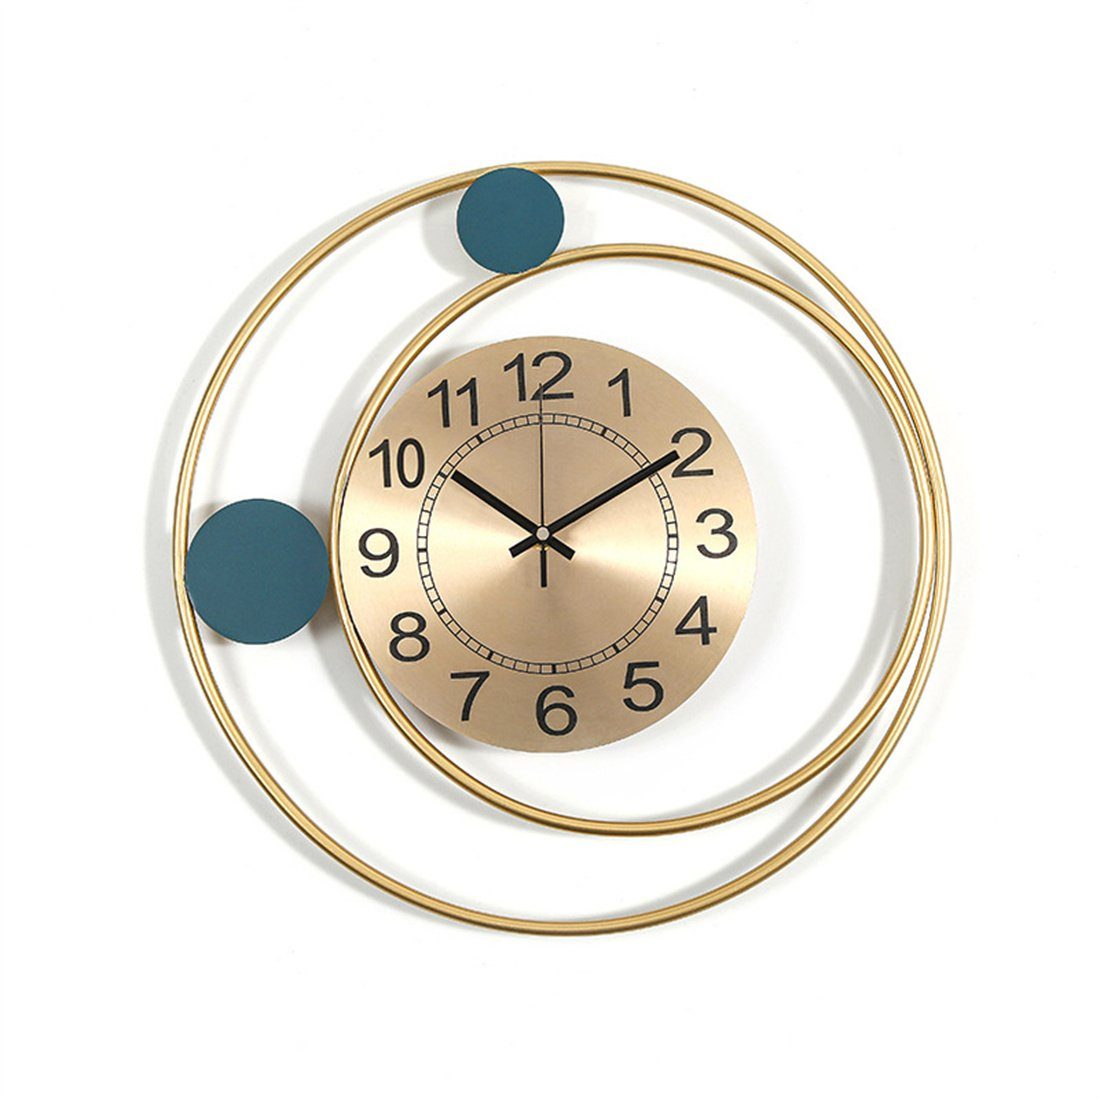 DÖRÖY Eisen, kreative Uhr dekorative aus moderne runde Wanduhr Wanduhr, Wanduhr 42cm